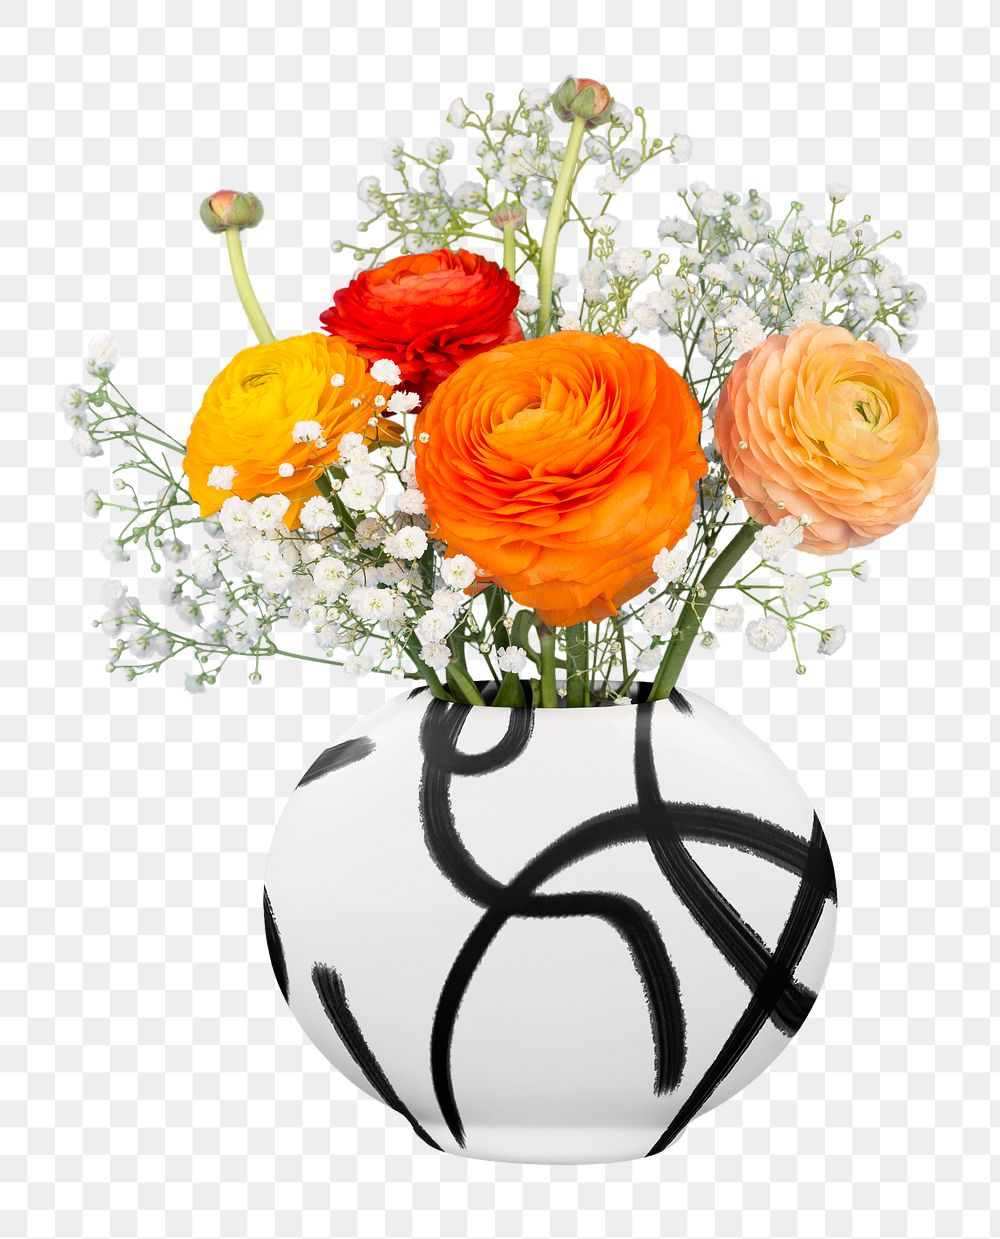 Flower vase png, transparent background